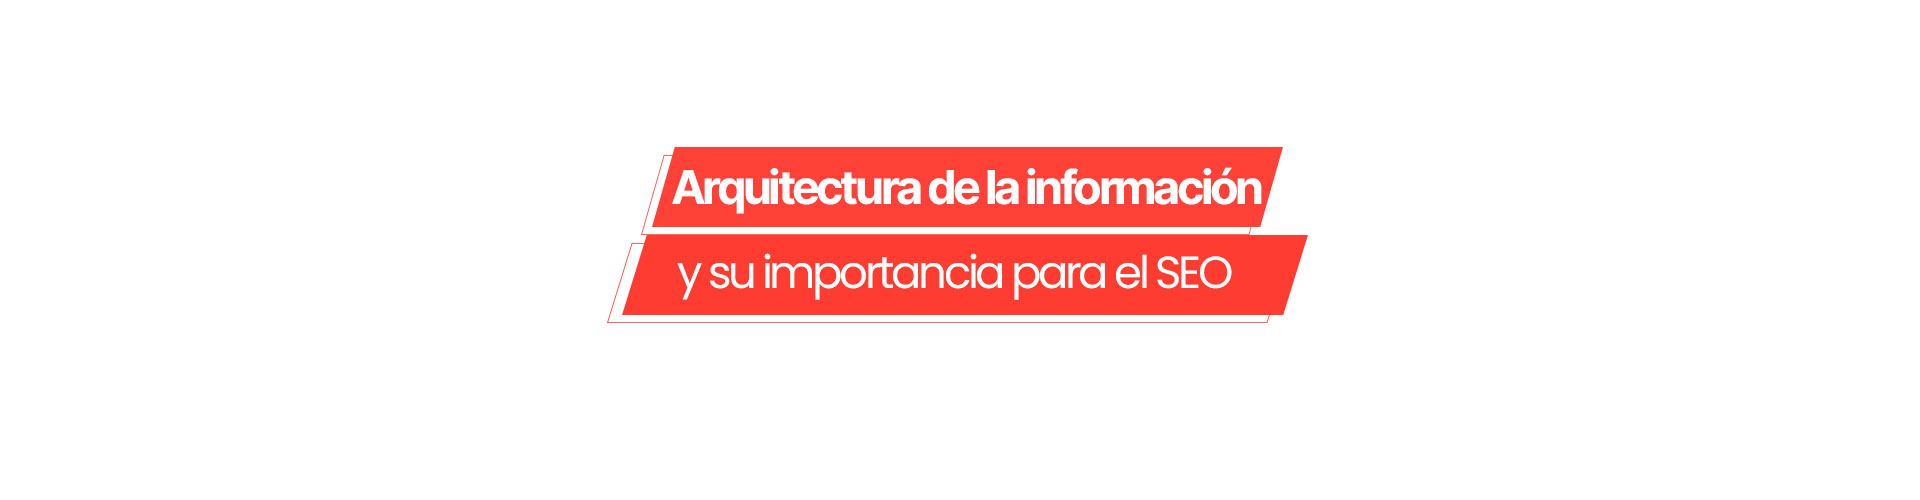 arquitectura informacion seo Arquitectura de la información para SEO: ¿por qué es tan importante?